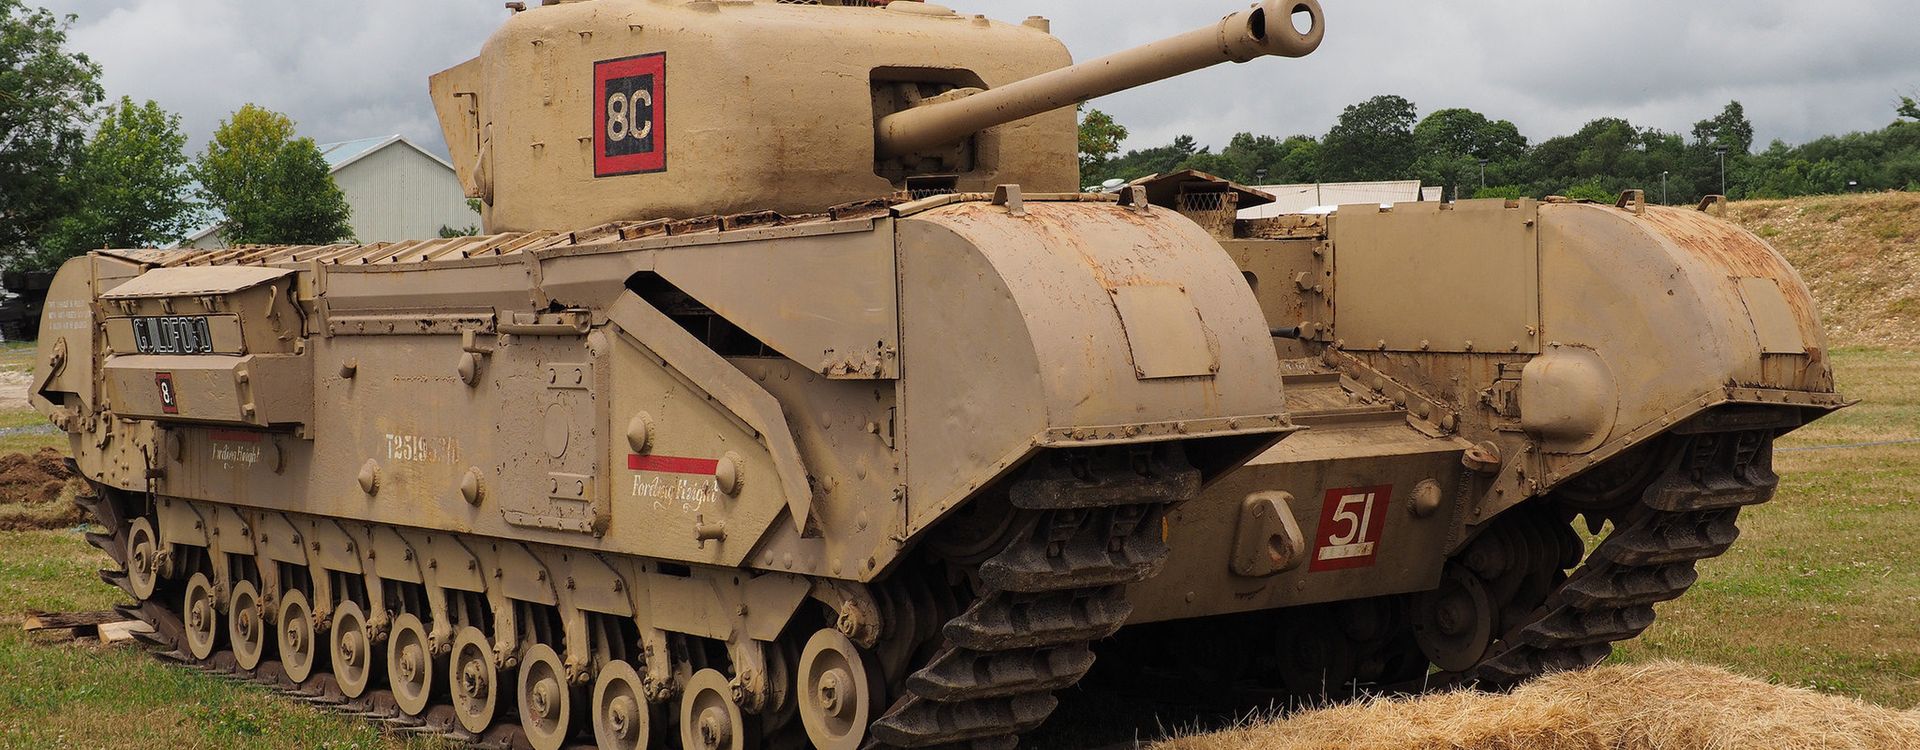 Najbardziej niedoceniane czołgi II wojny światowej